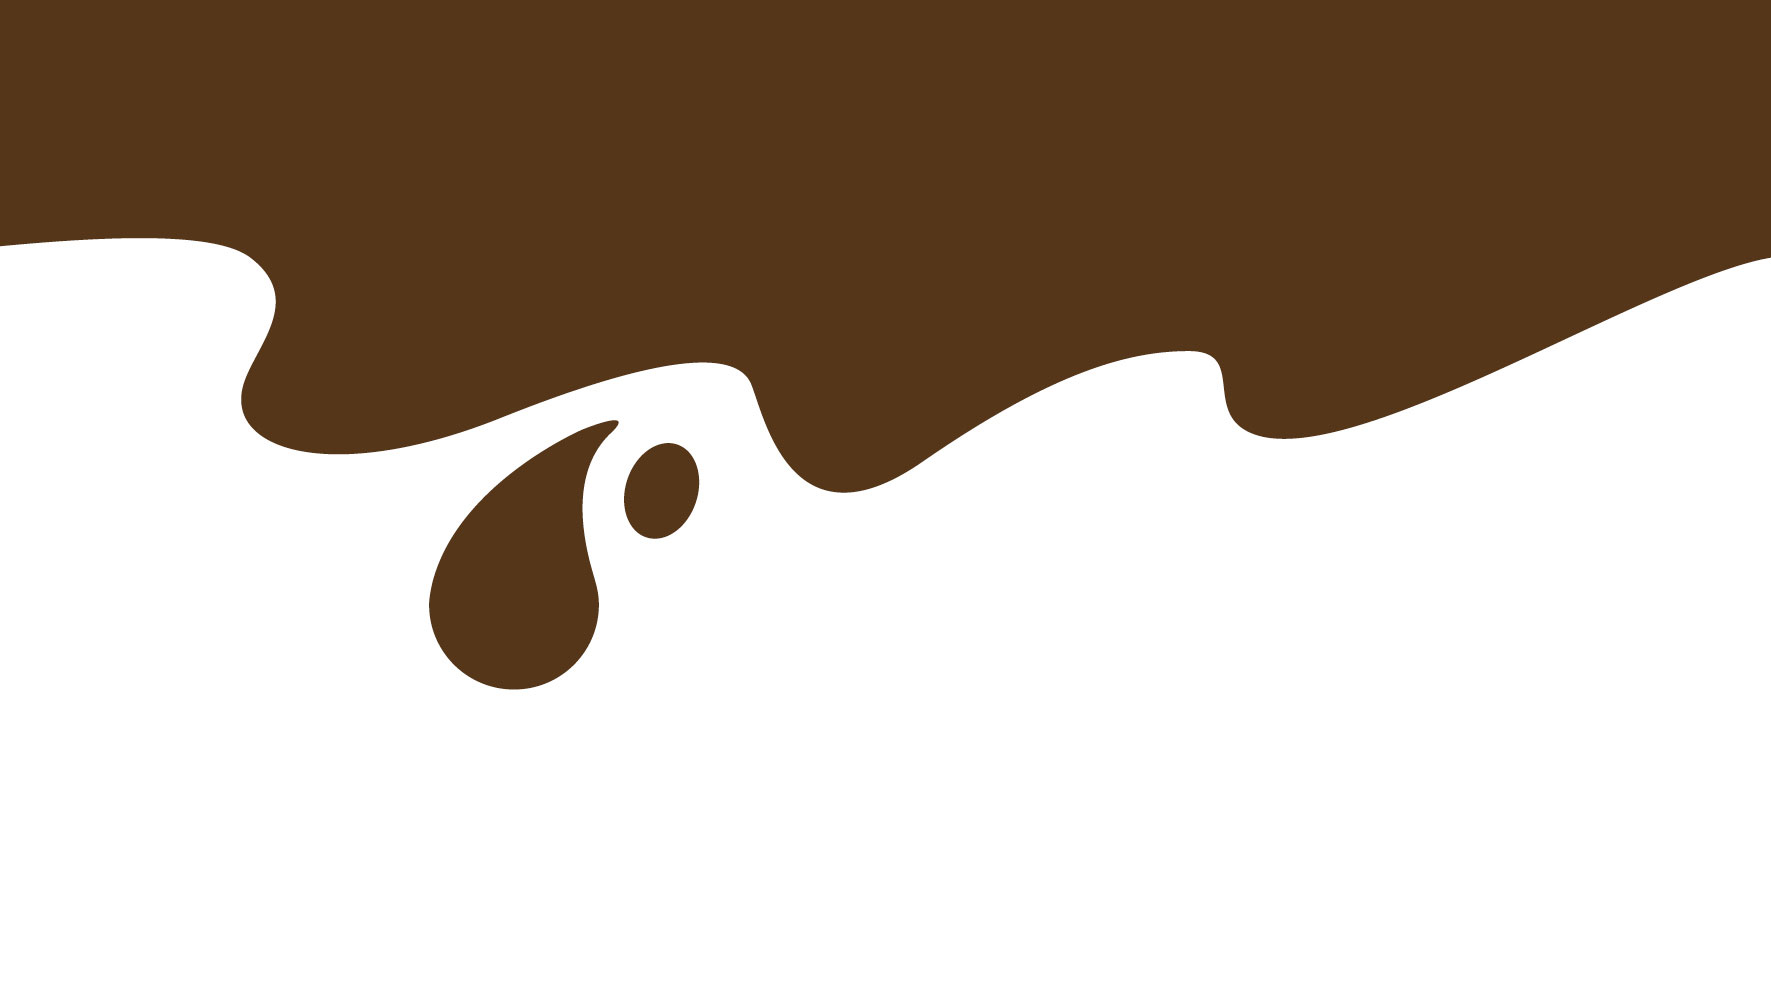 Ferrero. La Fabbrica di Cioccolato